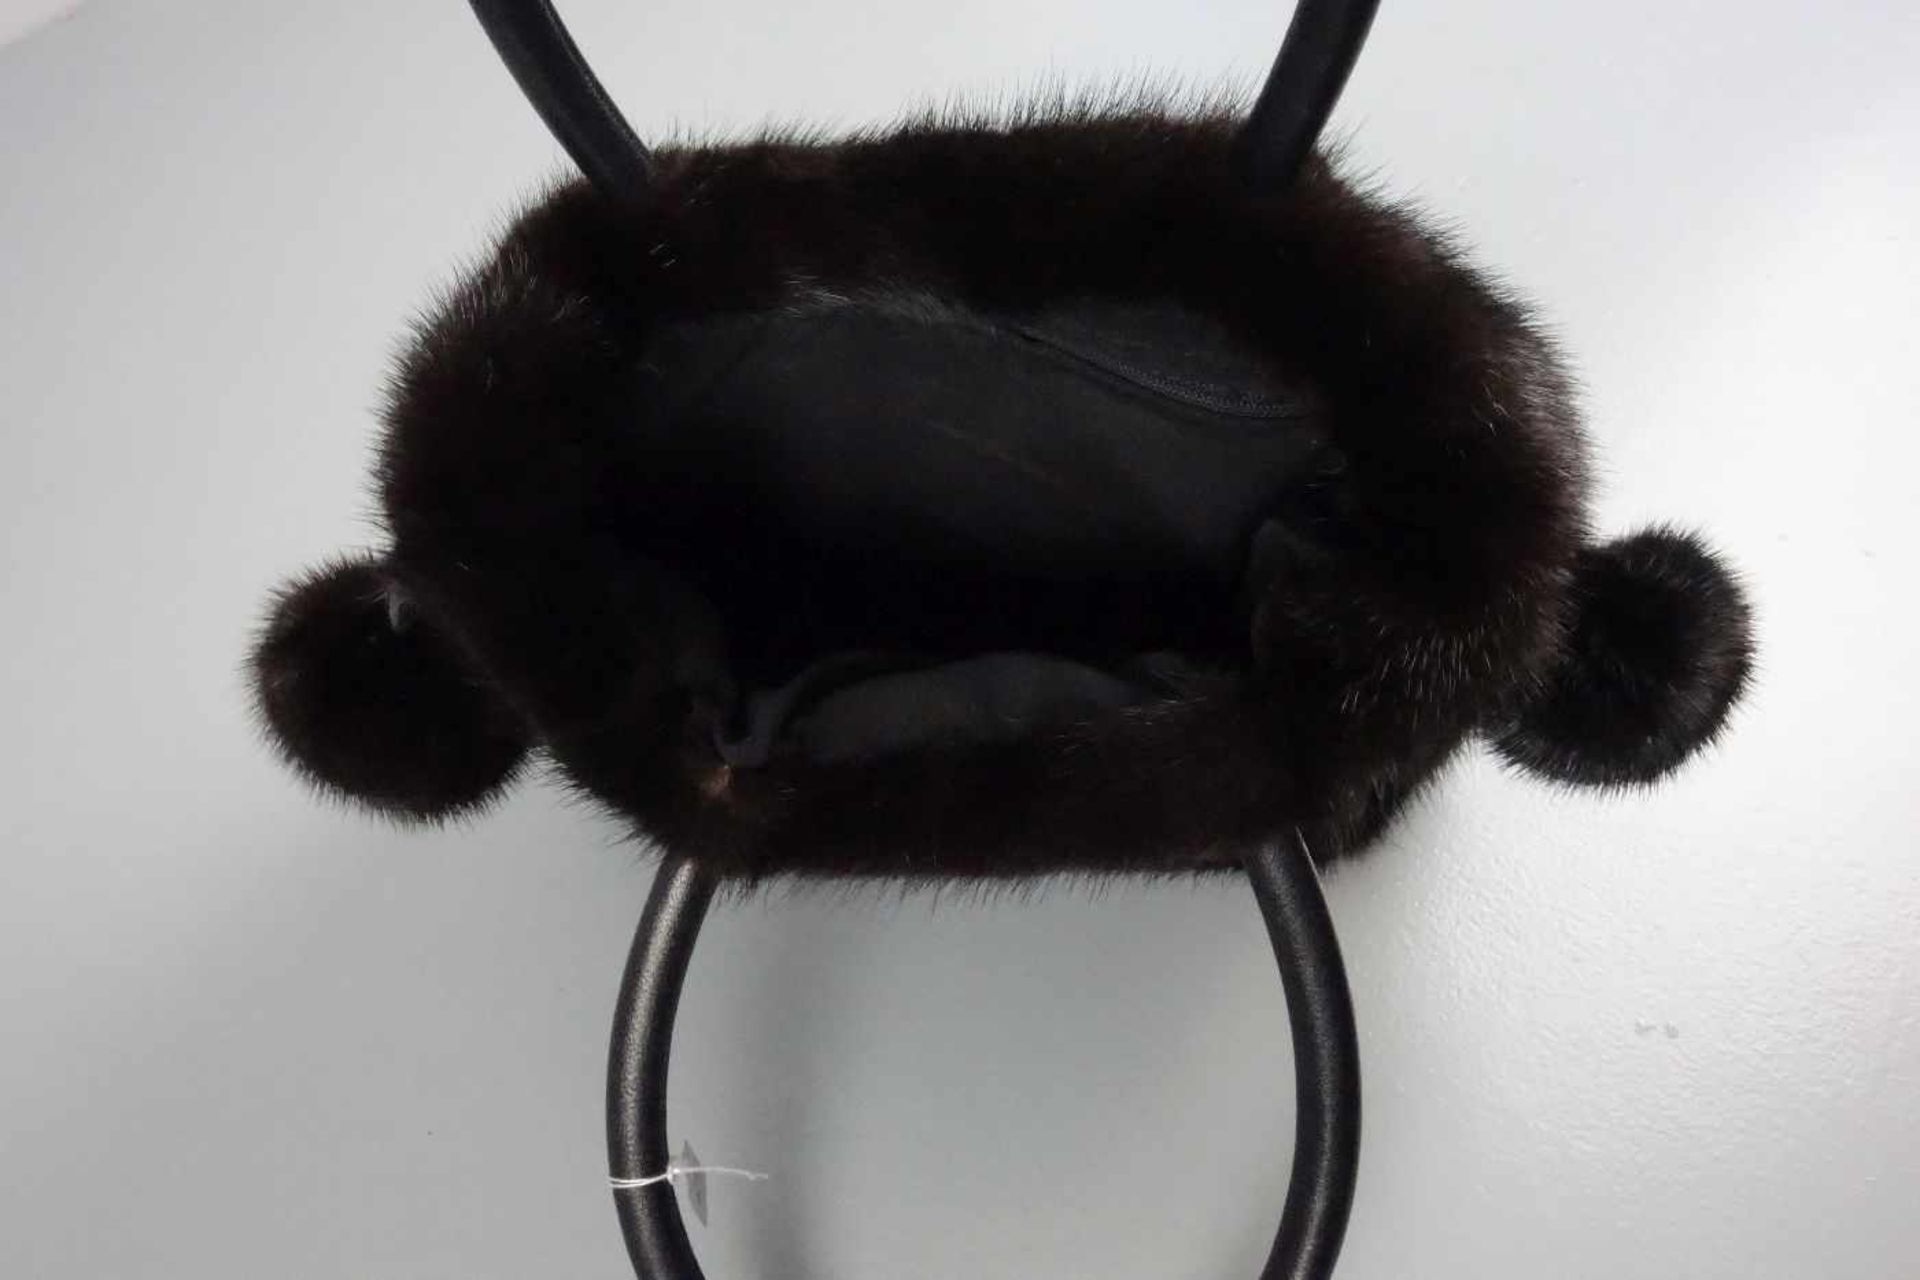 NERZ - HANDTASCHE / mink handbag. Schwarzer, schmalrechteckiger Lederstand, leichte Trapezform, - Bild 3 aus 3